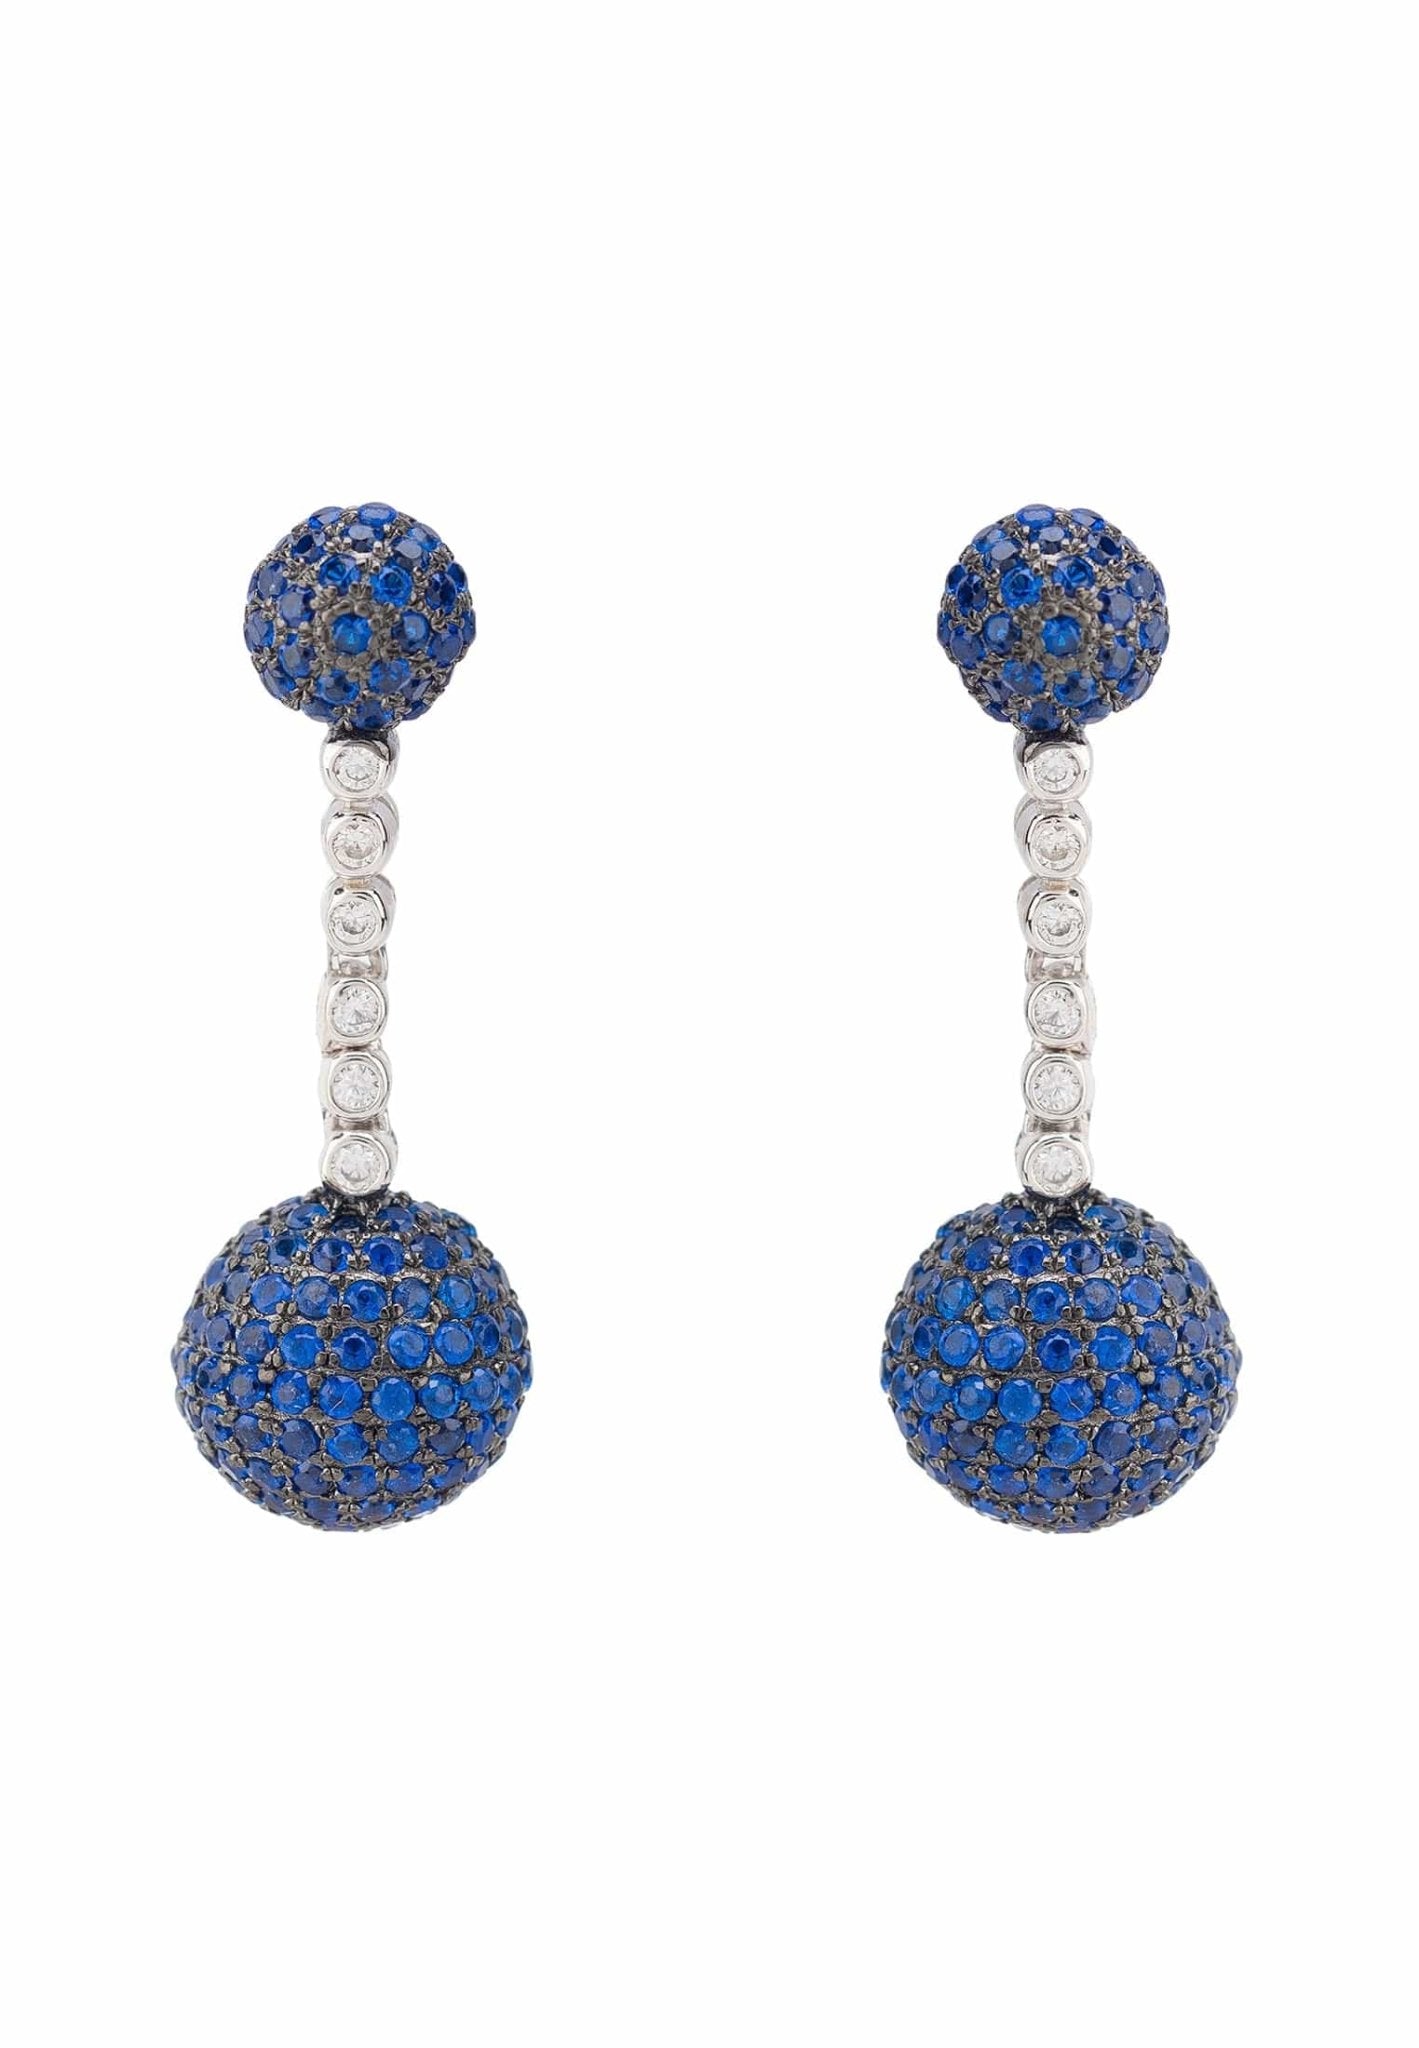 Cannes Sphere Drop Earrings Silver Sapphire Blue Cz - LATELITA Earrings